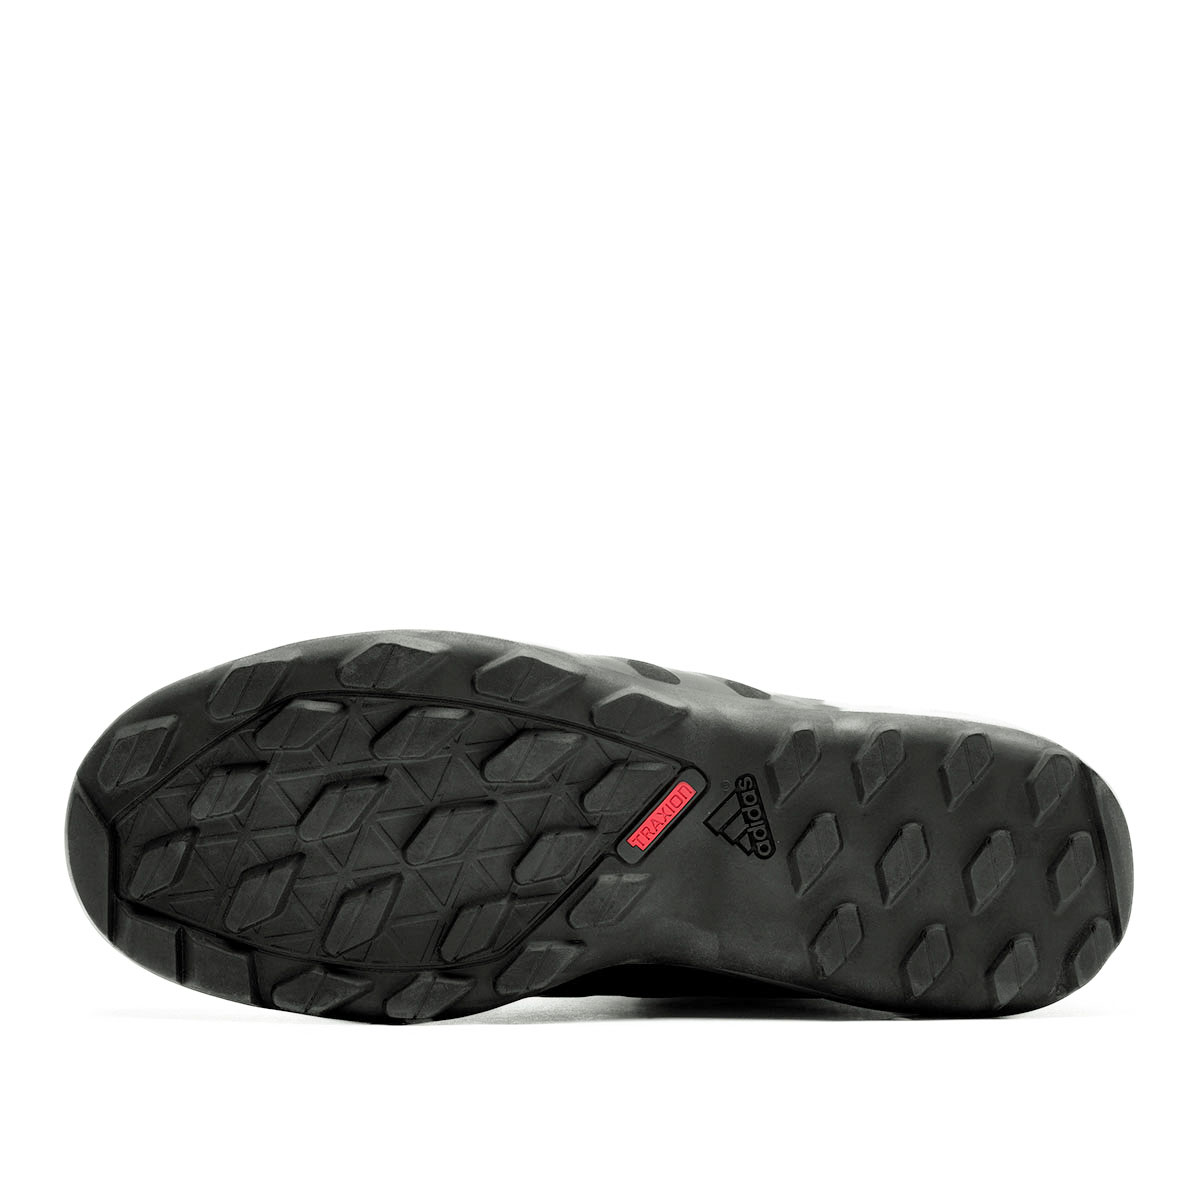 adidas Daroga Plus Mid Leather  B27276